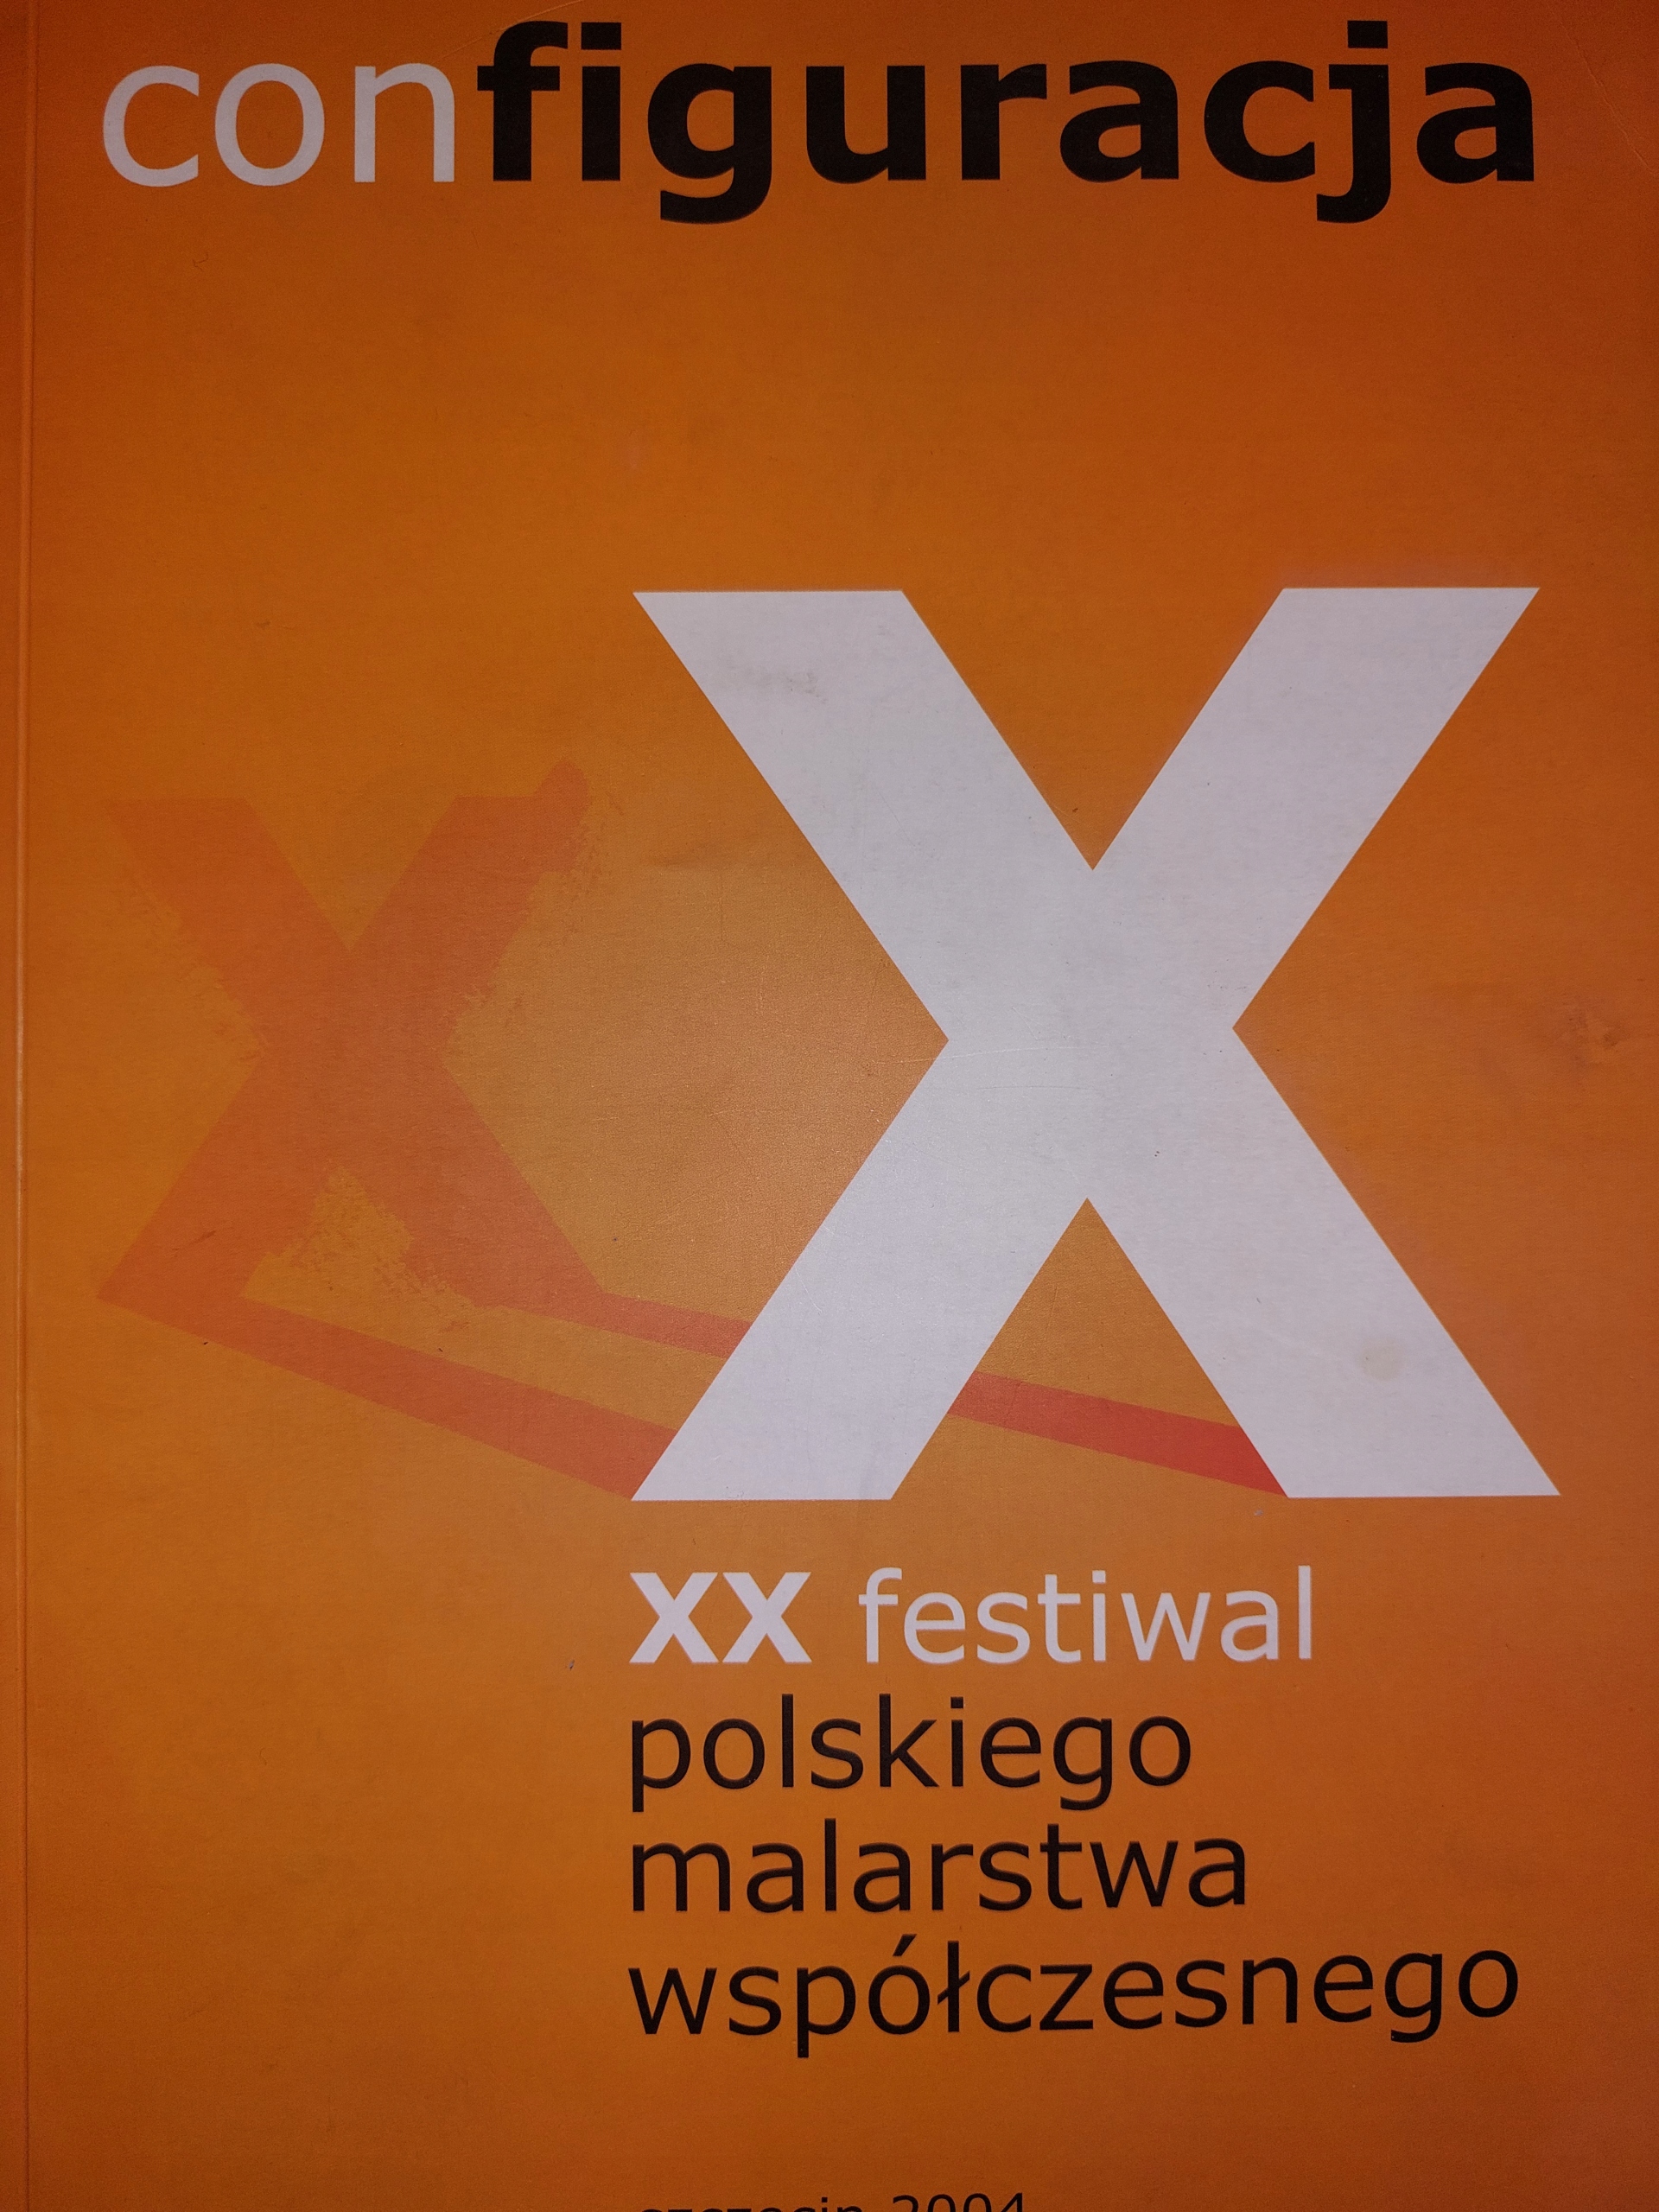 XX Festiwal polskiego malarstwa współczesnego